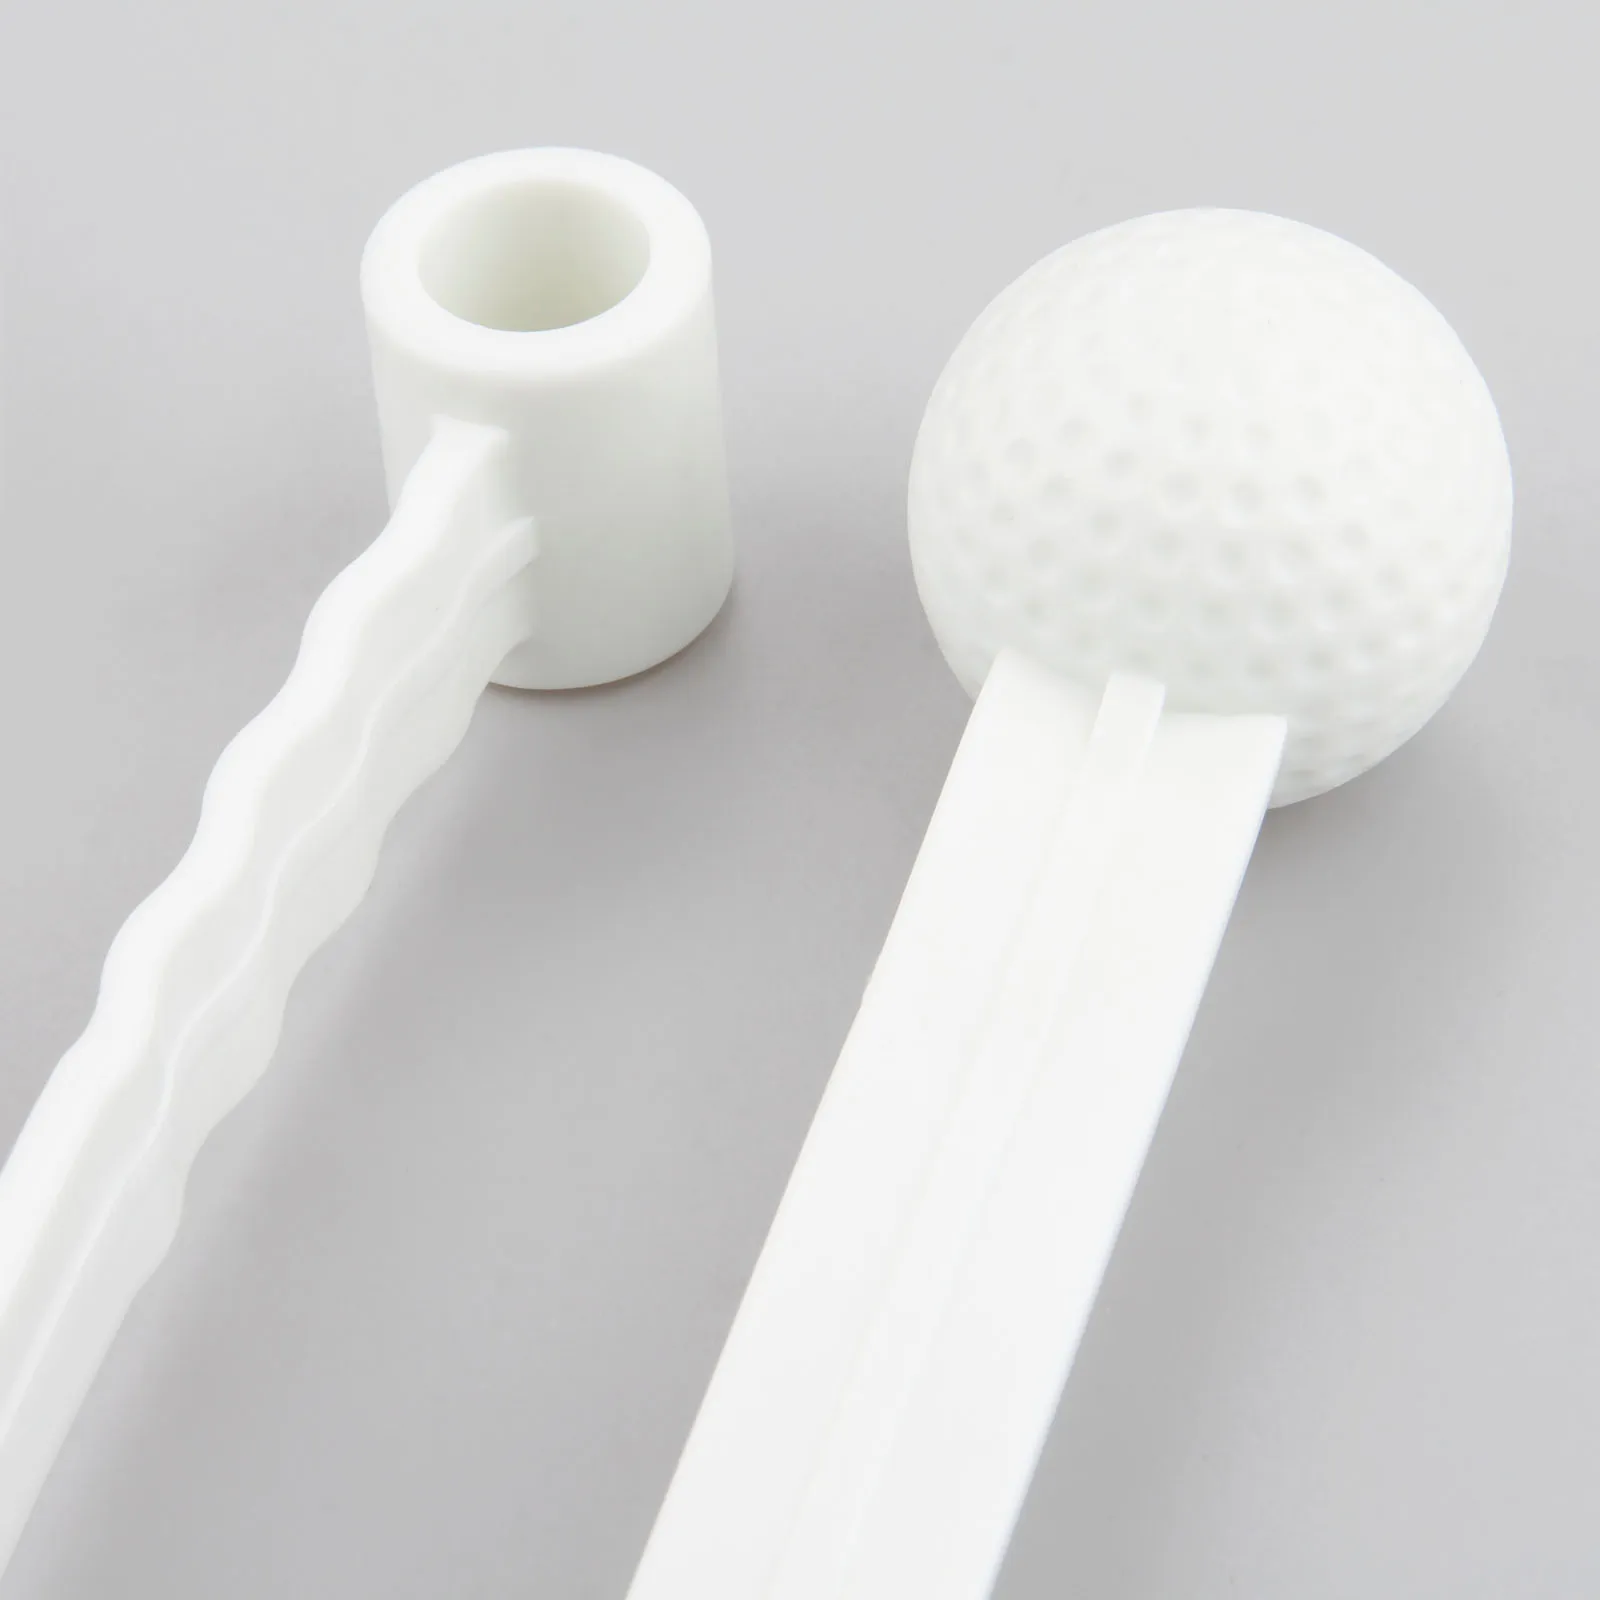 SURIEEN 1 шт. Пластик Гольф взмах положить стержень с инструментами, начинающих Обучающие приспособления для игры в гольф мяч с палкой аксессуары для гольфа